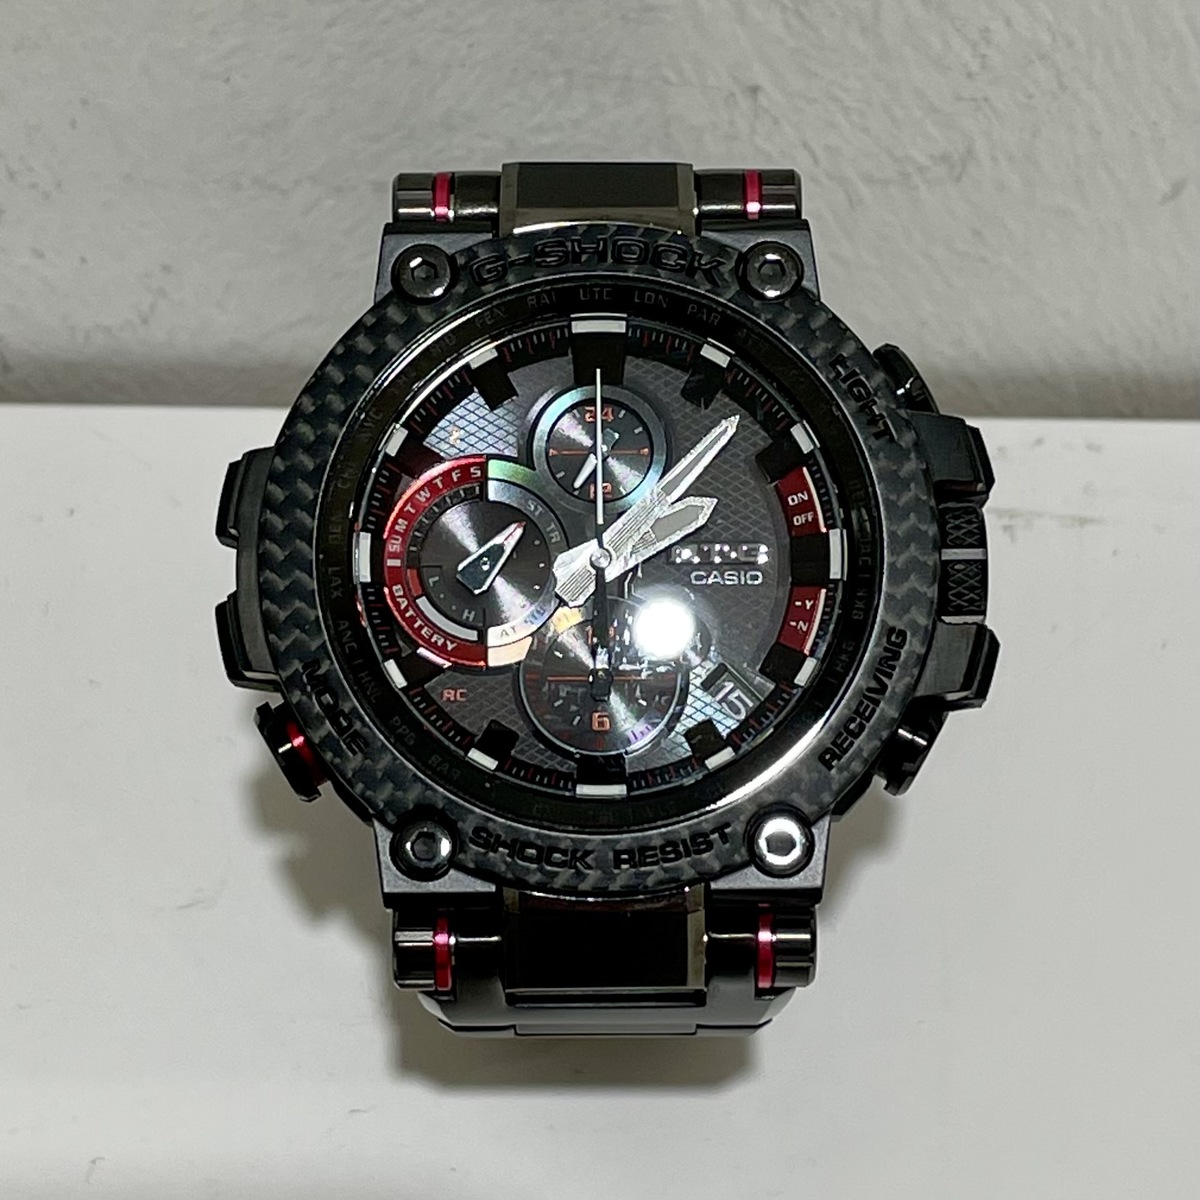 ジーショックのブラック カーボンベゼル MTG-B1000XBD-1AJF Bluetooth搭載 電波ソーラー 腕時計の買取実績です。